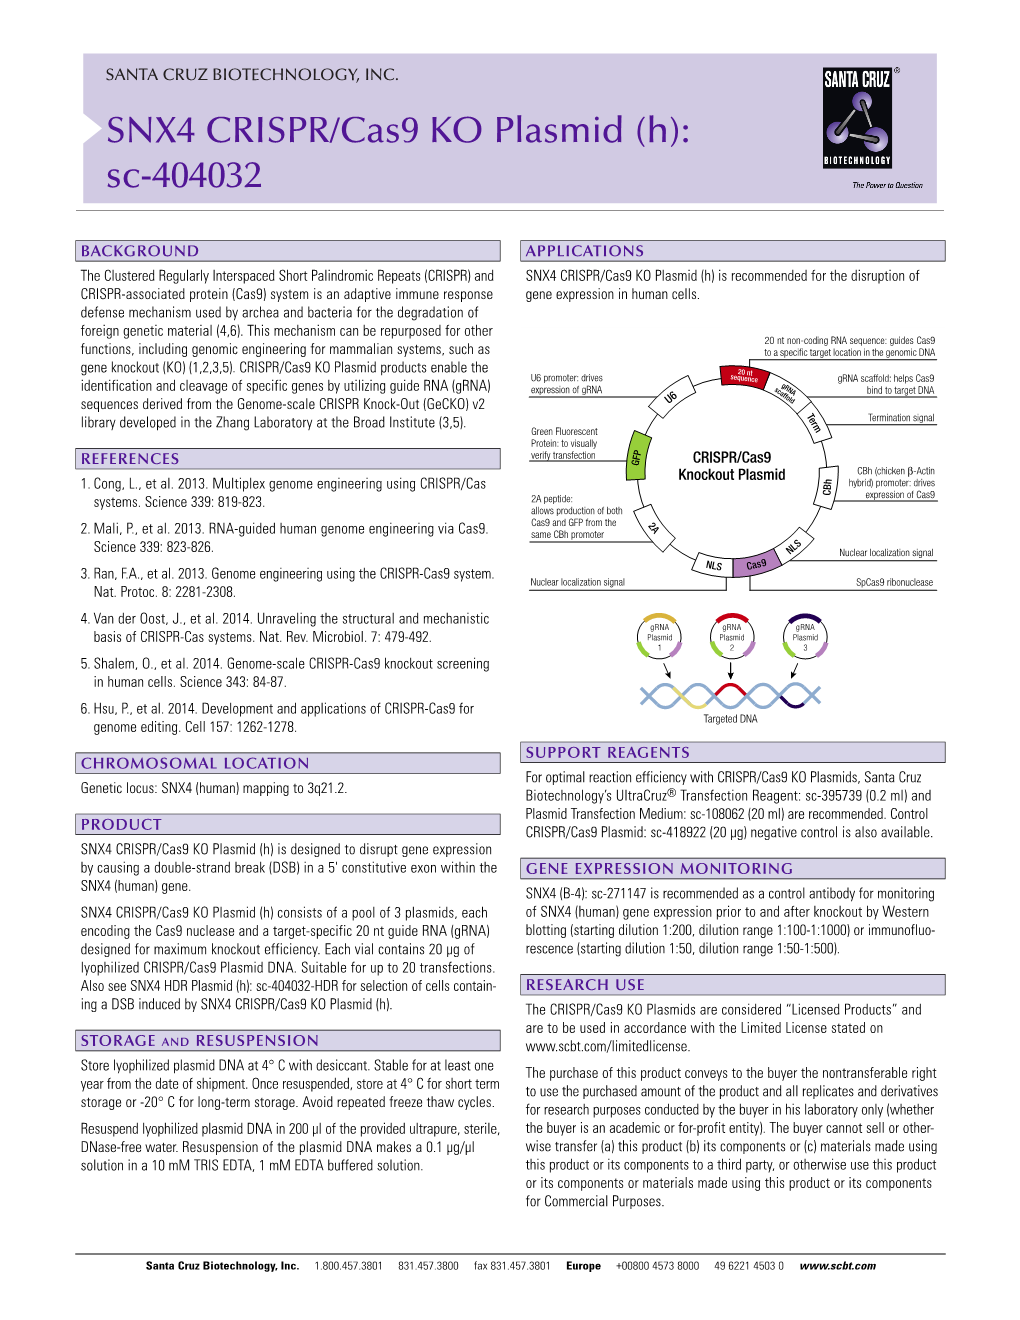 SNX4 CRISPR/Cas9 KO Plasmid (H): Sc-404032